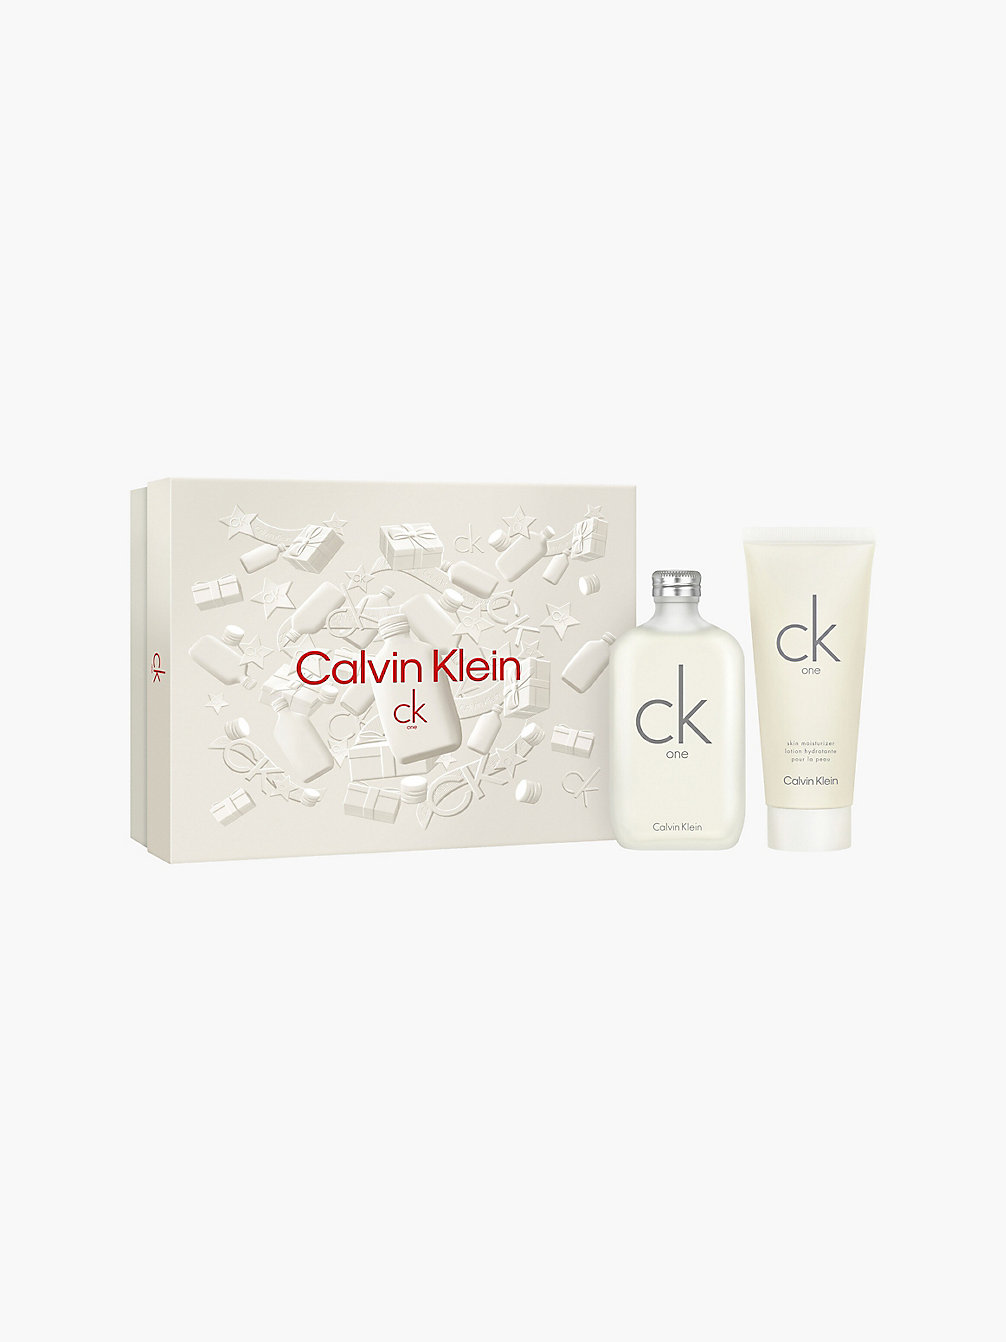 MULTI CK One - Coffret Cadeau Eau De Toilette undefined unisex Calvin Klein